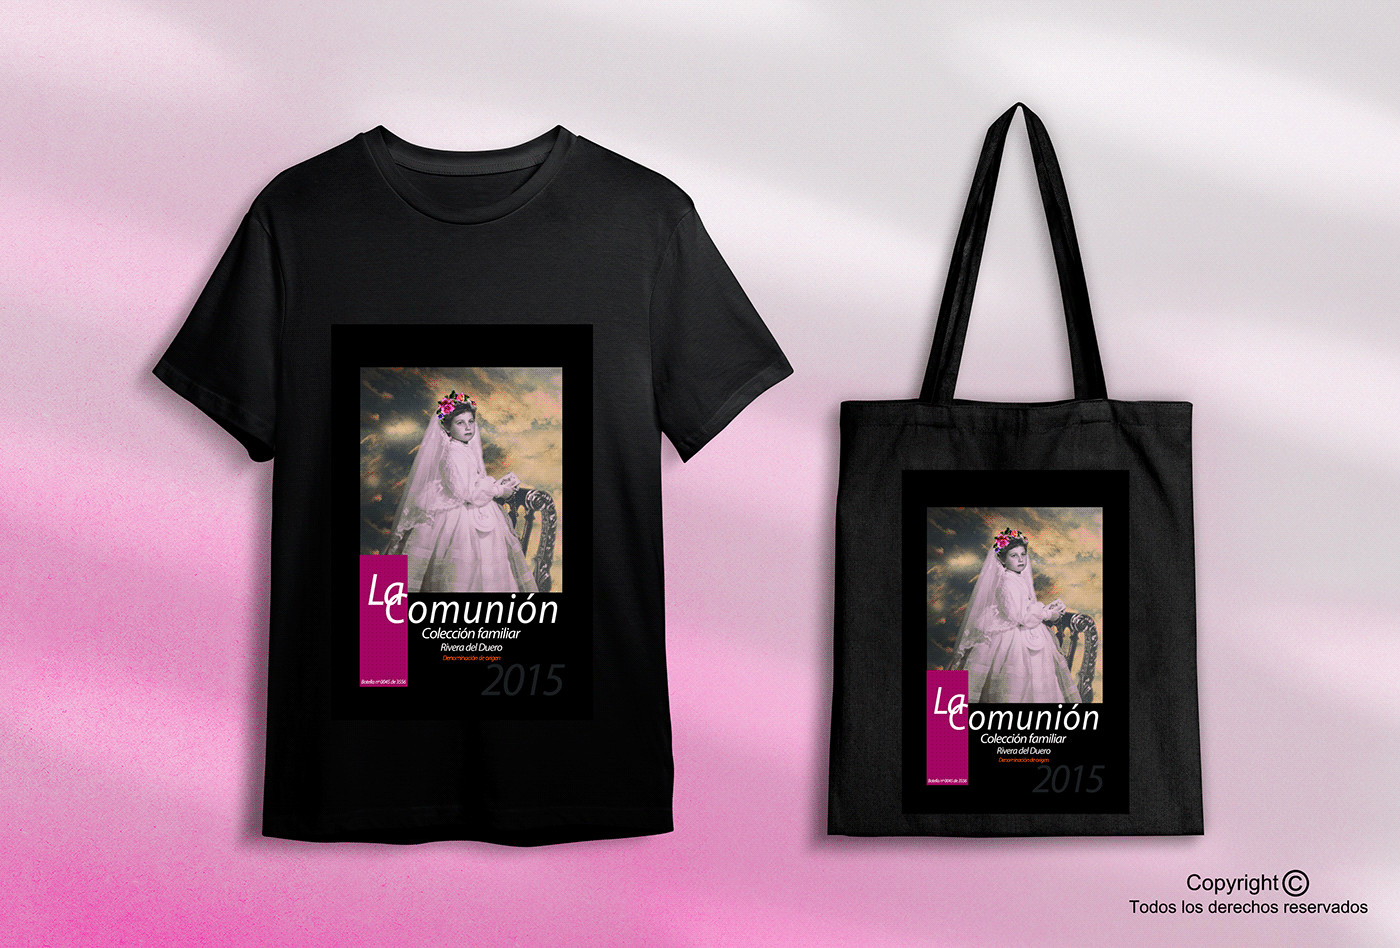 Artículos promocionales, camisetas y bolsas de algodón vinos "La Comunión" diseños personalizados

